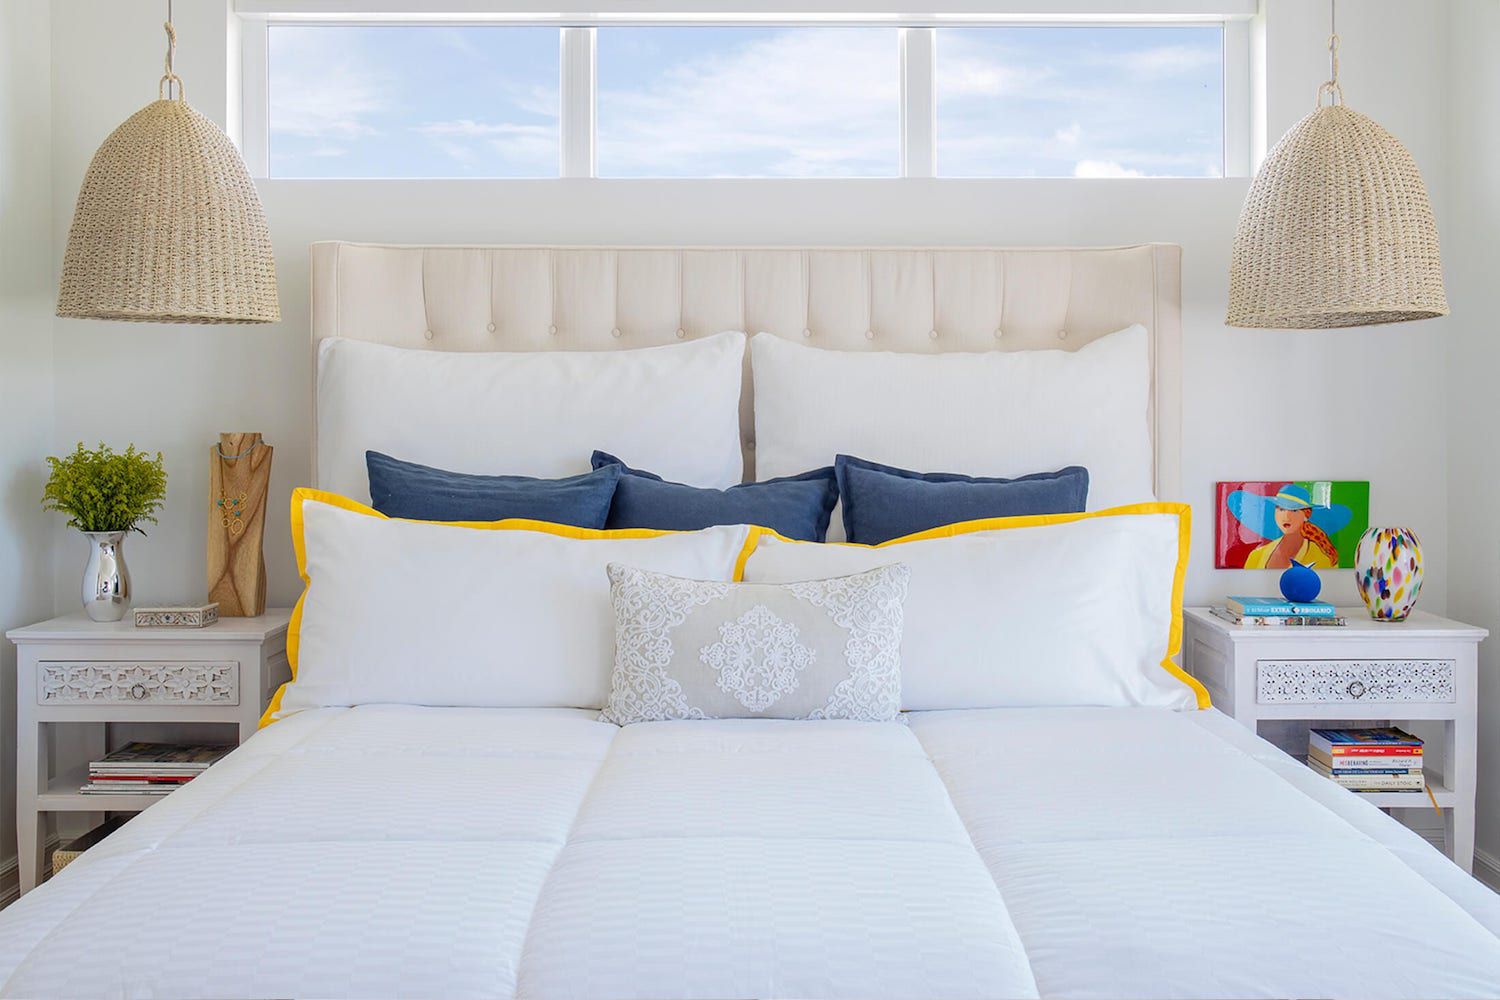 überwiegend weißes, neutrales Schlafzimmer mit Rattan-Hängelampen, kleinen Farbtupfern, offenen Fenstern über dem Bett